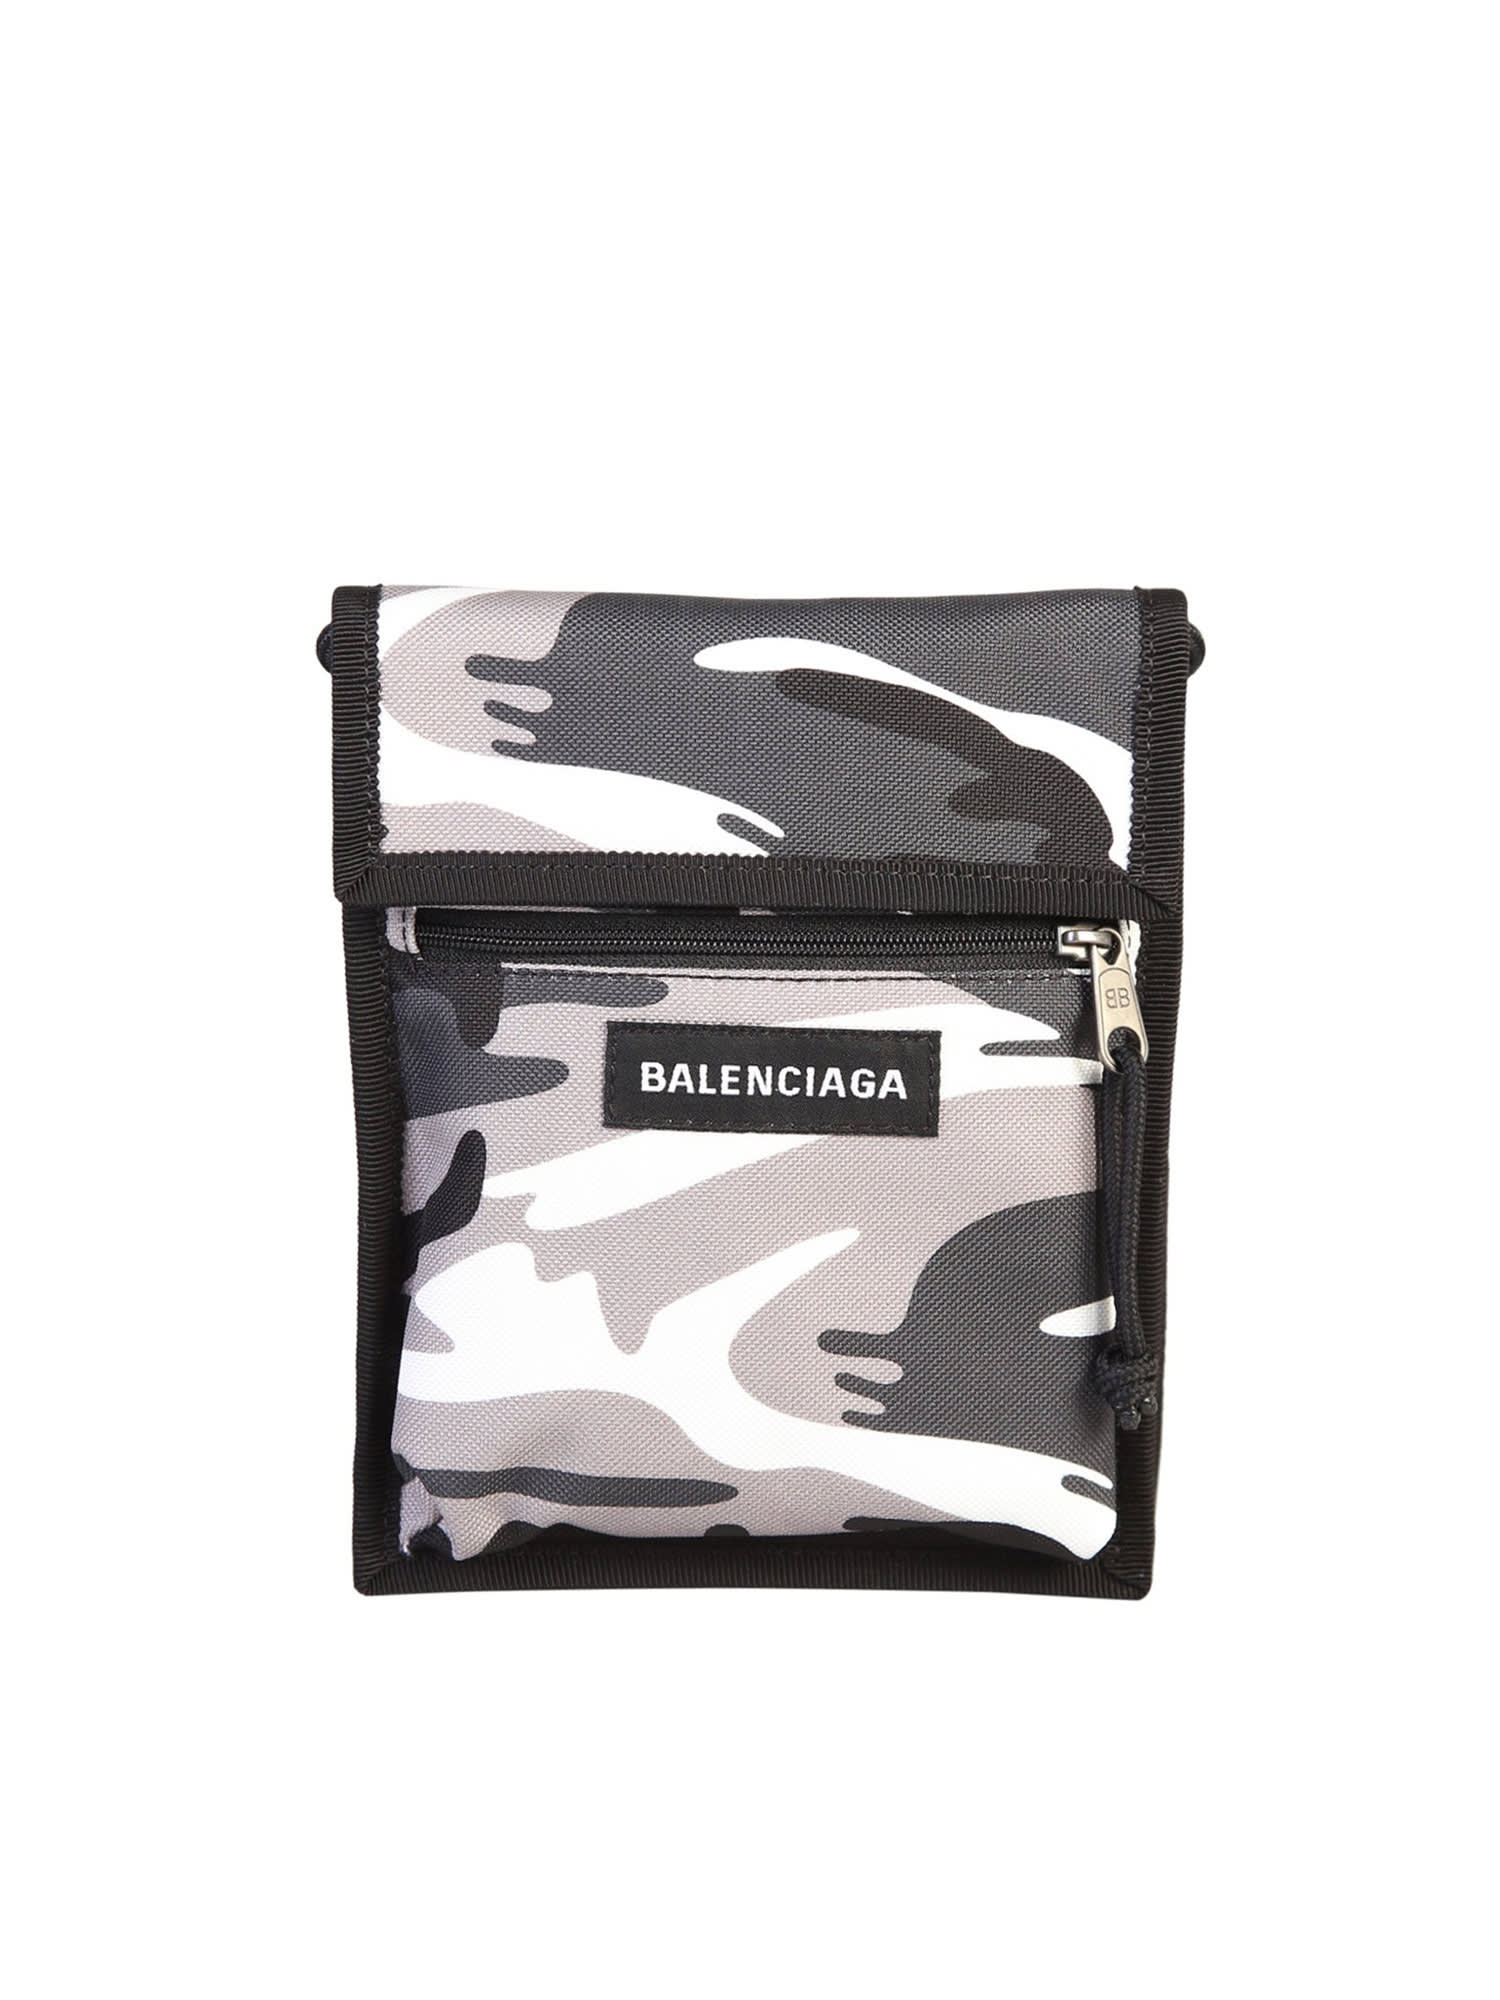 Balenciaga Camouflage Print Bag